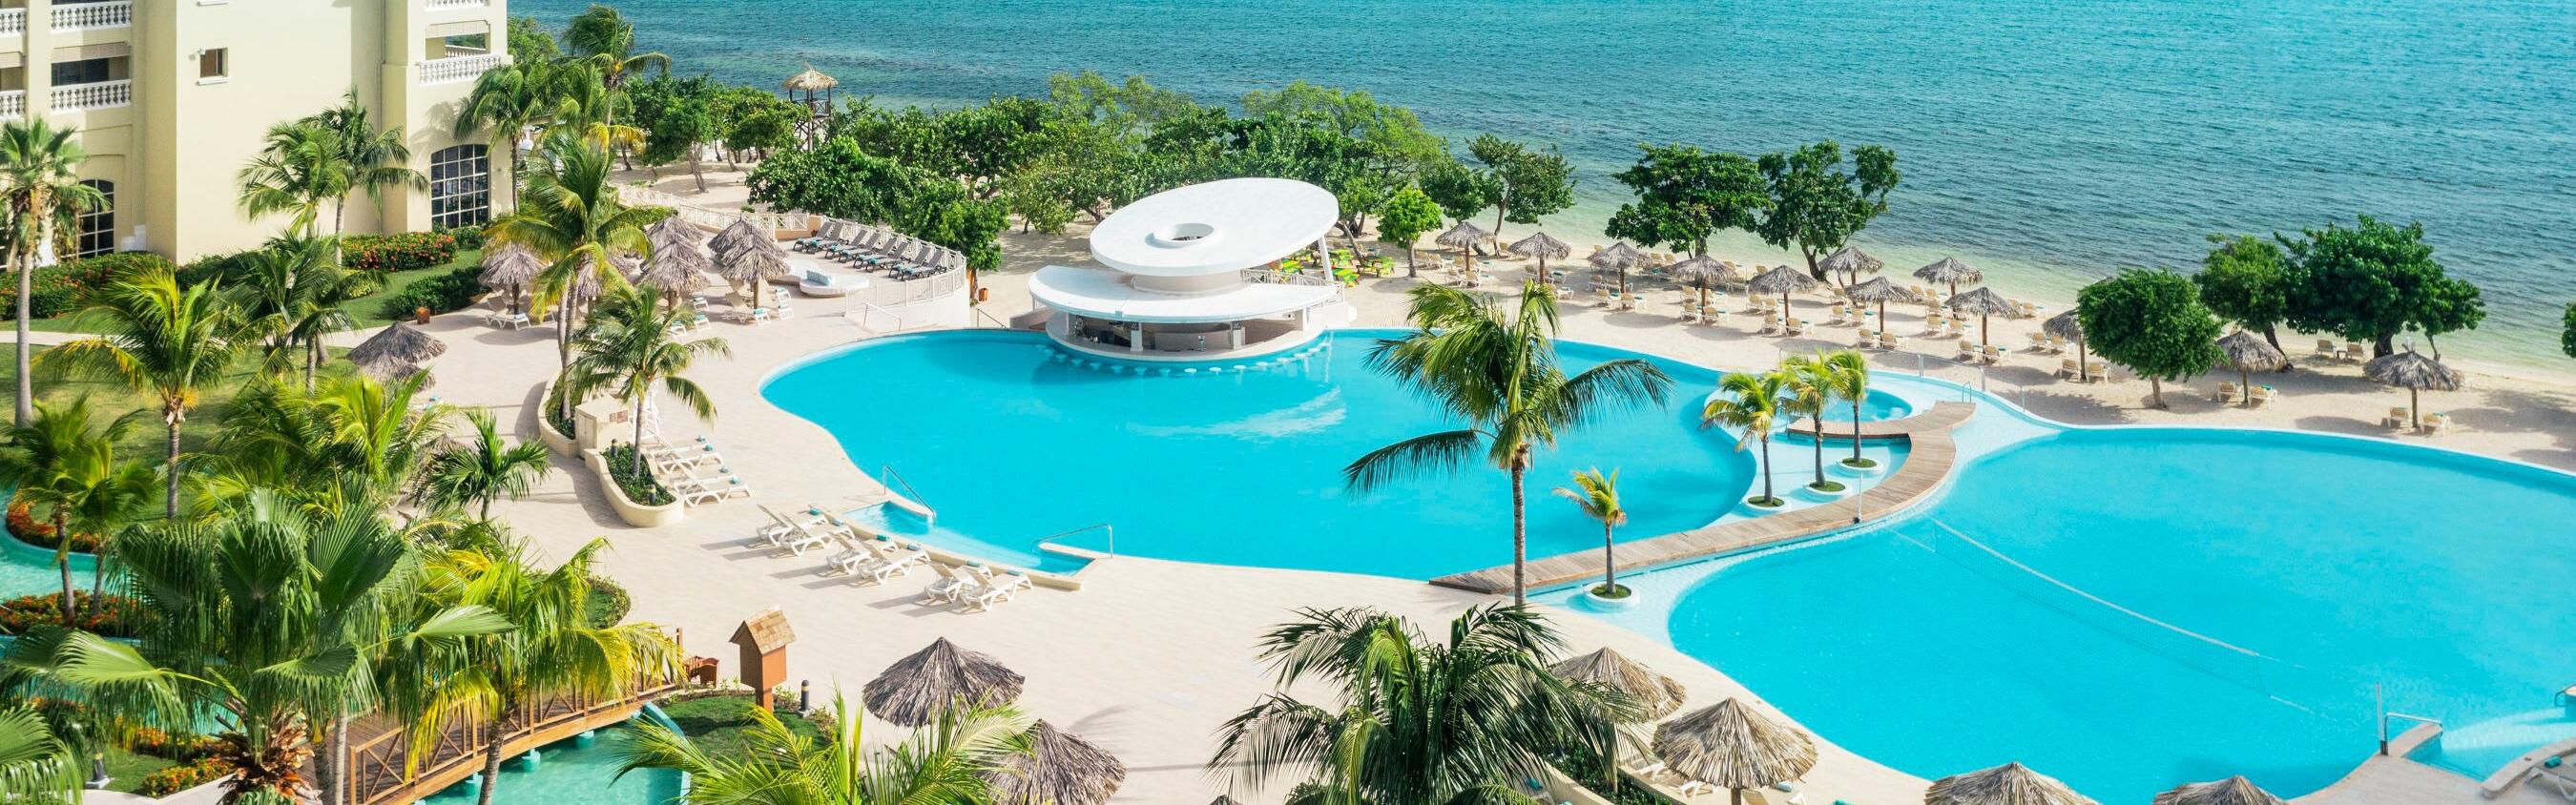 View of swimming pool at resort in Jamaica